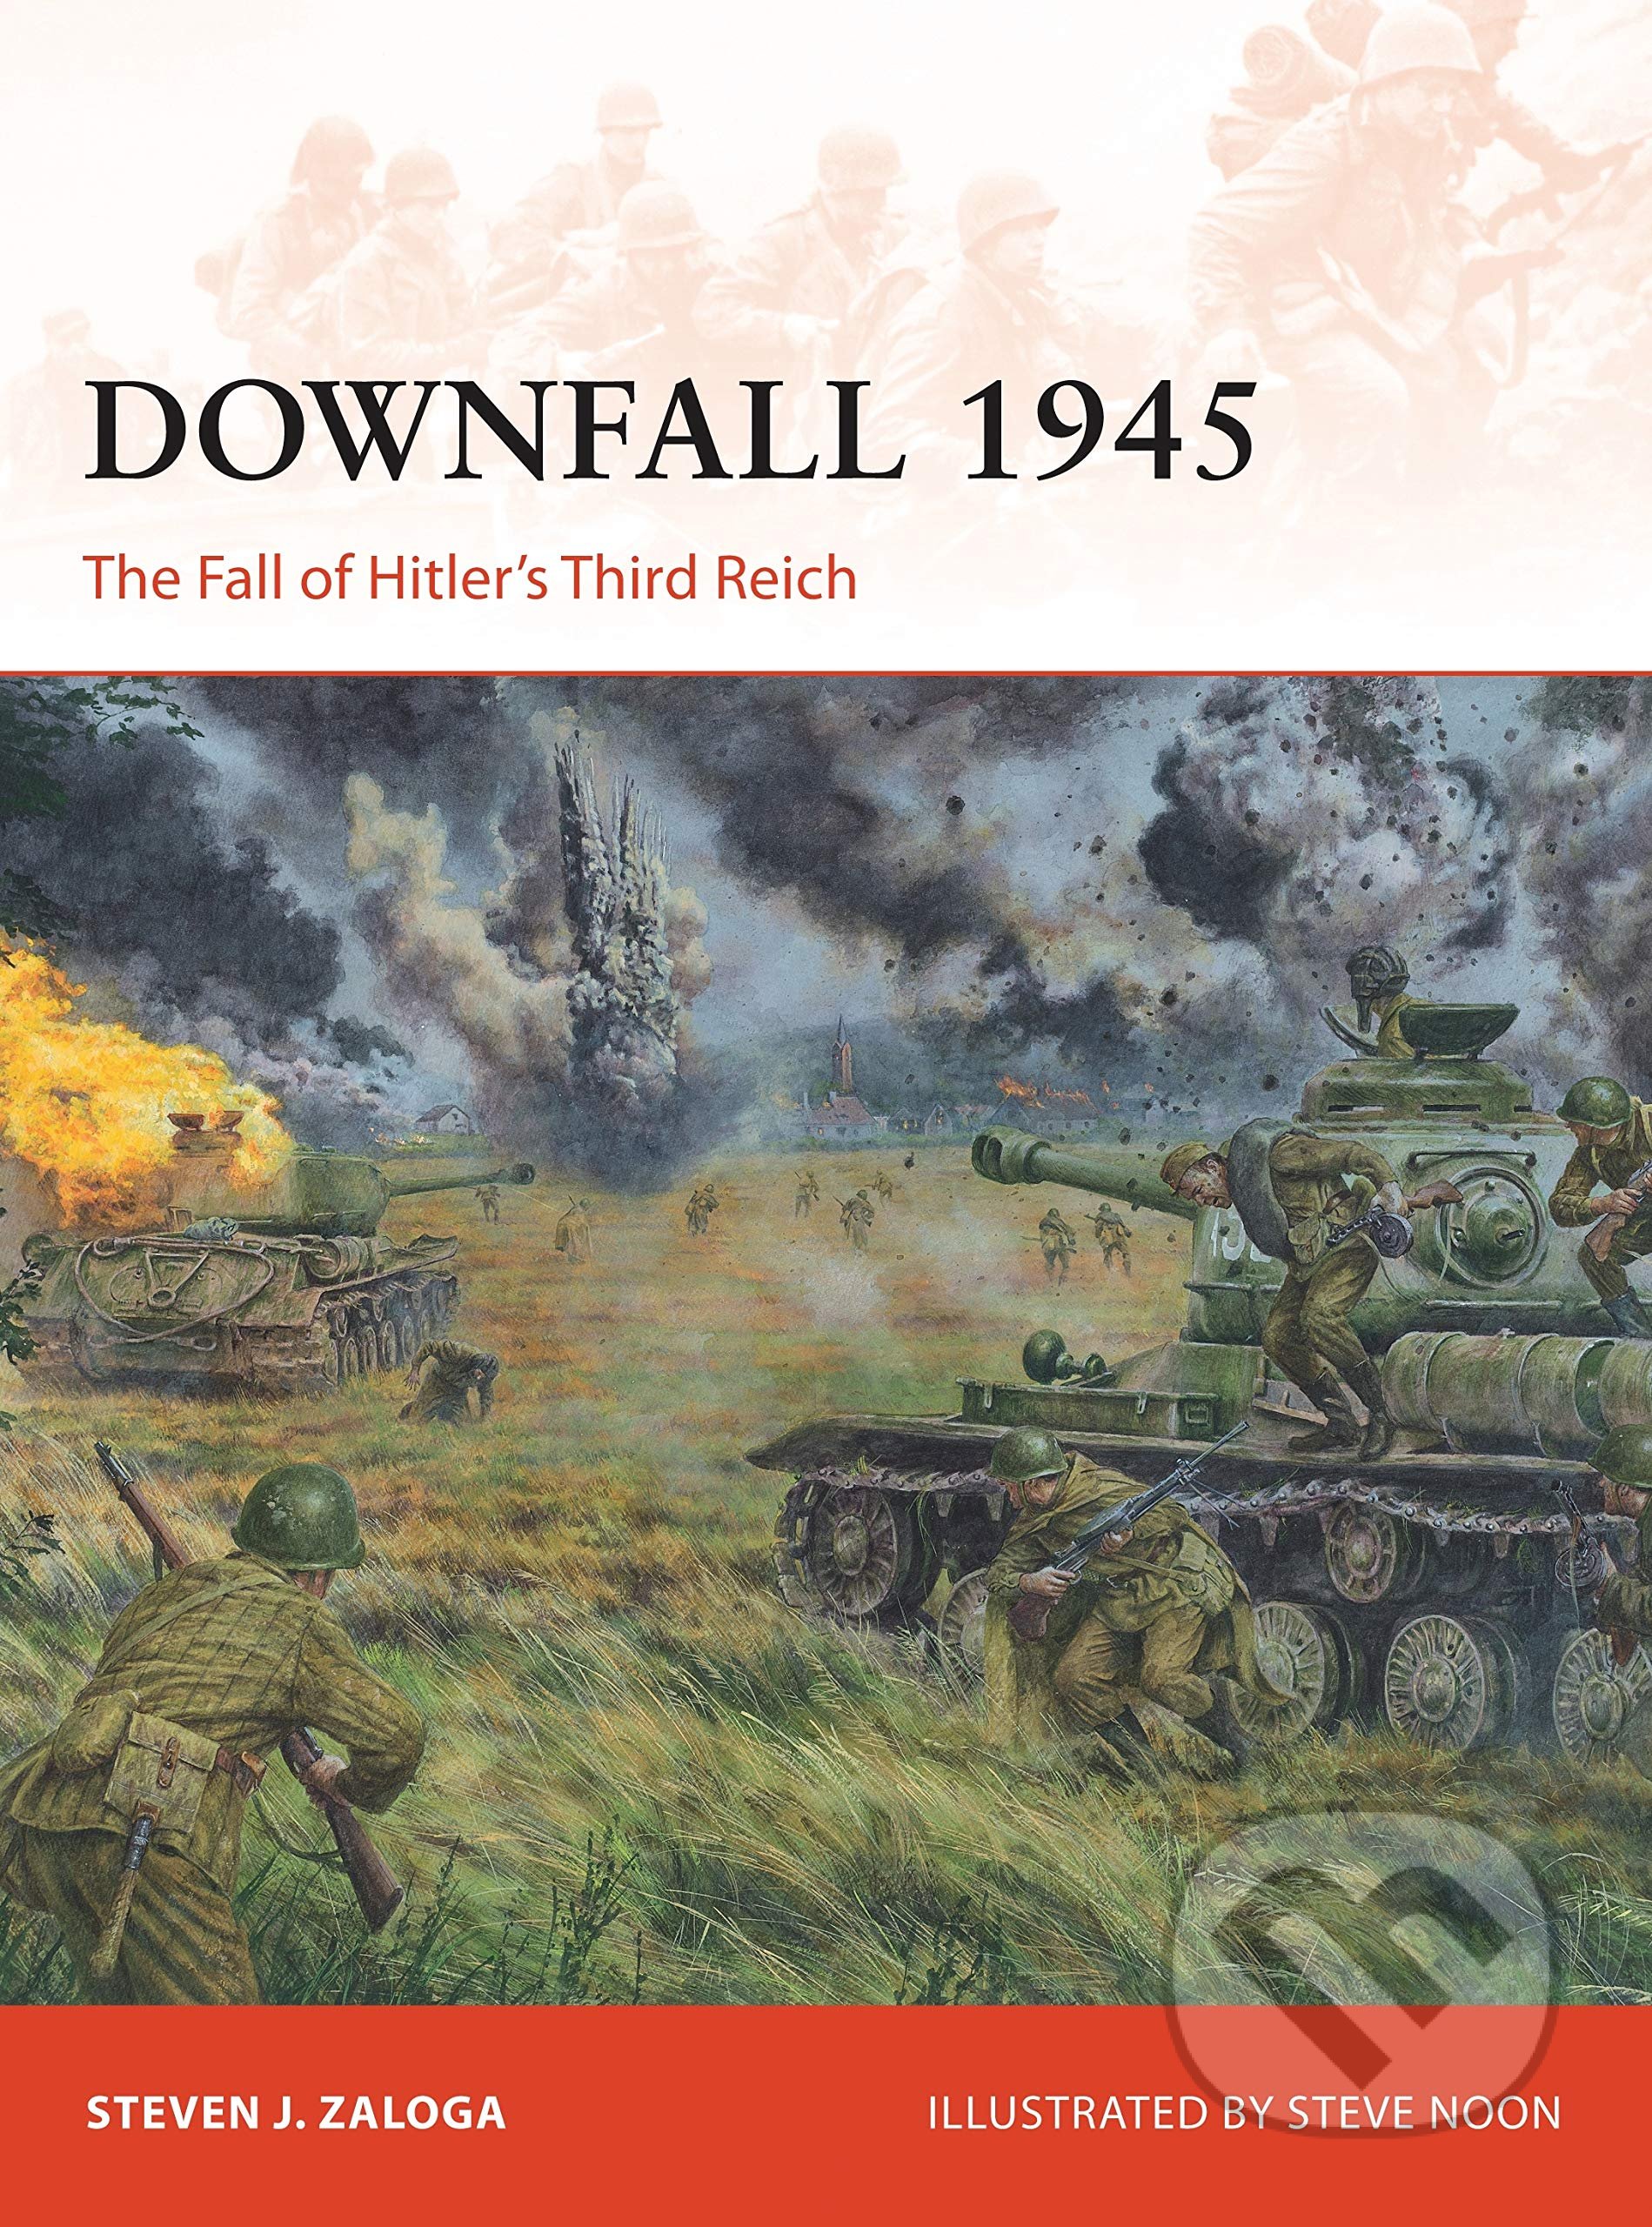 Downfall 1945 - Steven J. Zaloga, Steve Noon (ilustrátor), Osprey Publishing, 2016